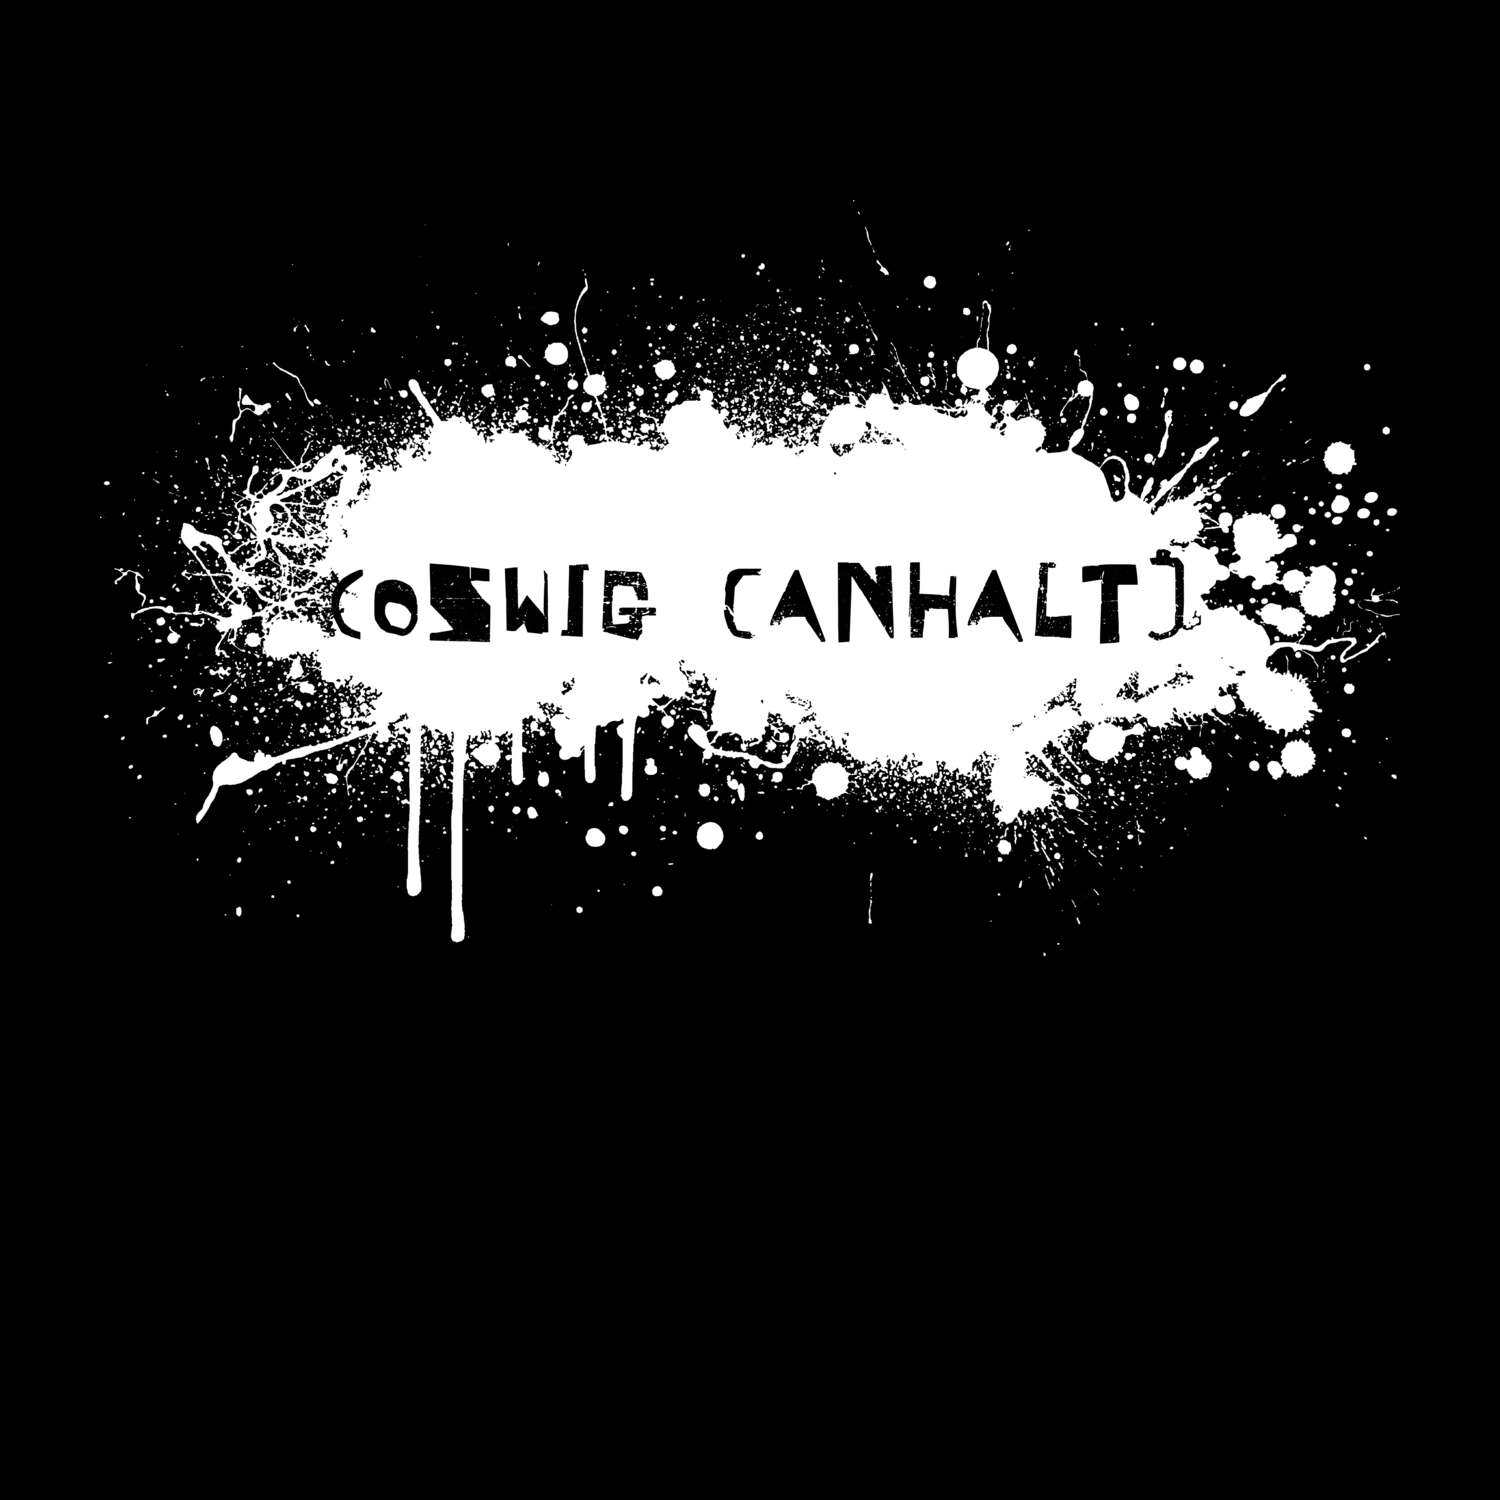 Coswig (Anhalt) T-Shirt »Paint Splash Punk«